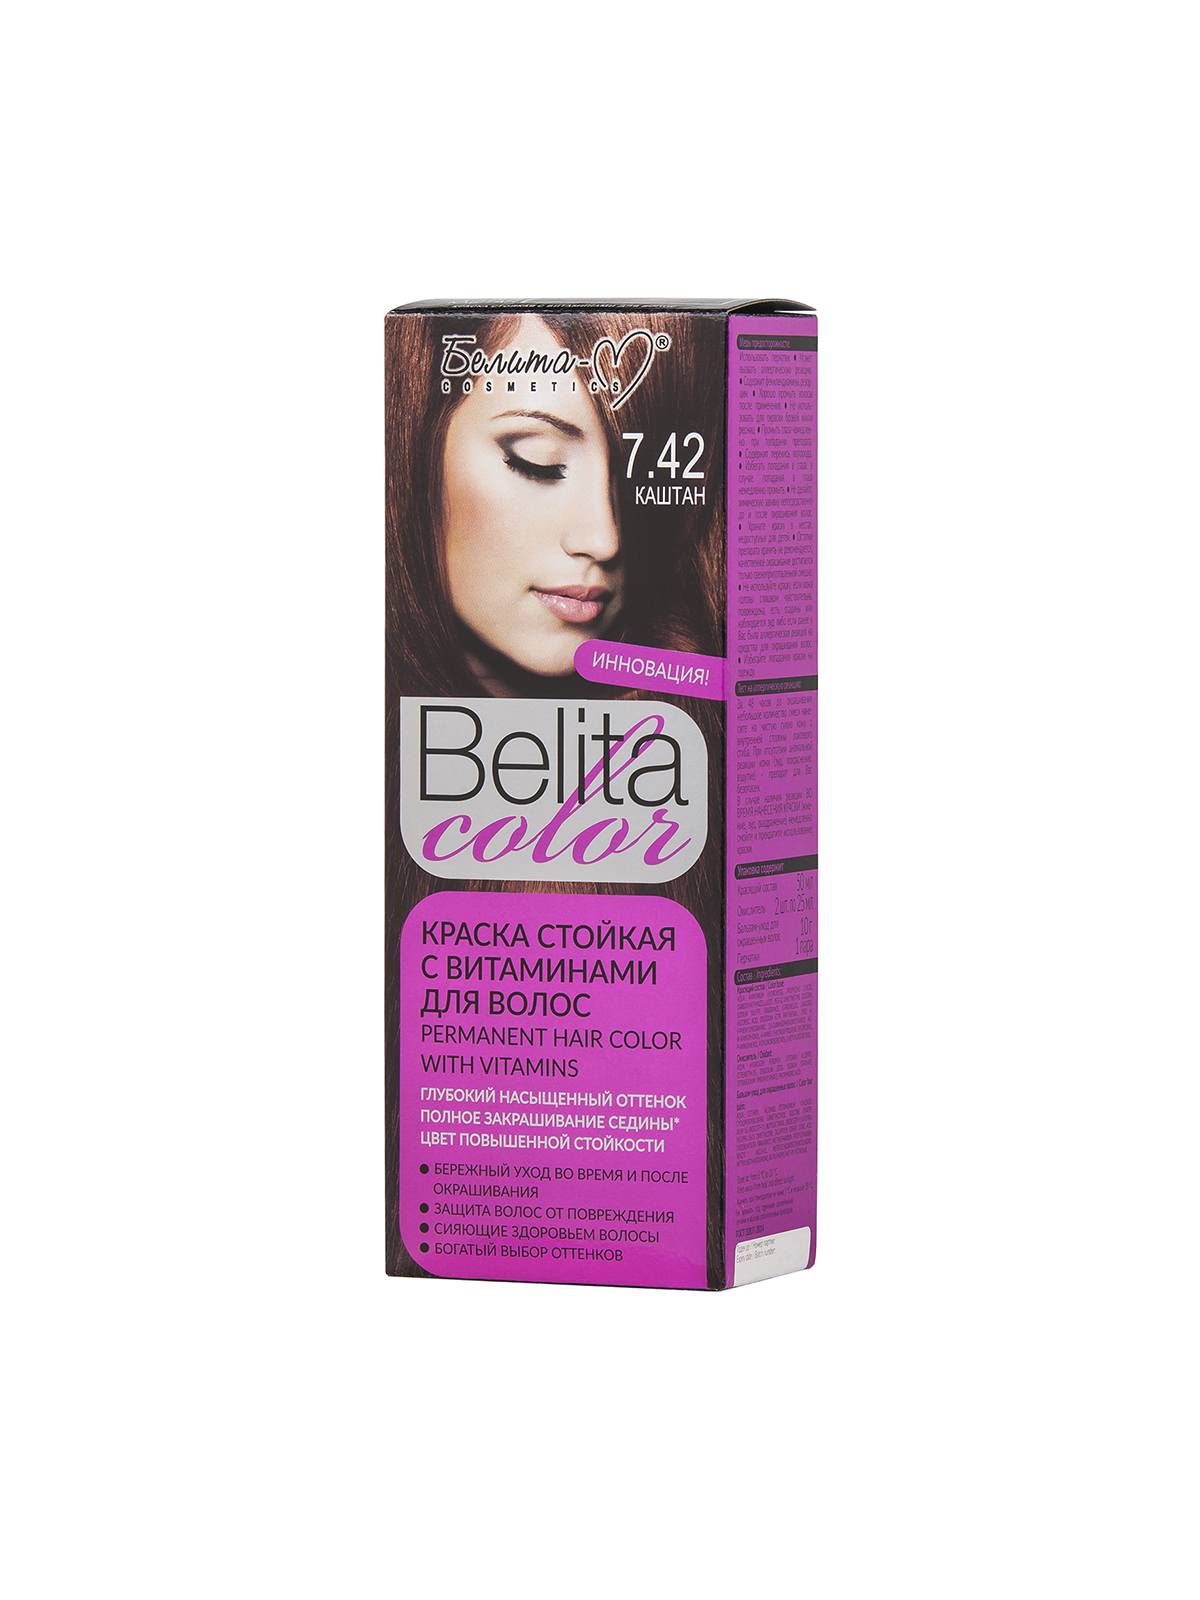 Краска стойкая с витаминами для волос серии "Belita сolor" № 7.42 Каштан (к-т)